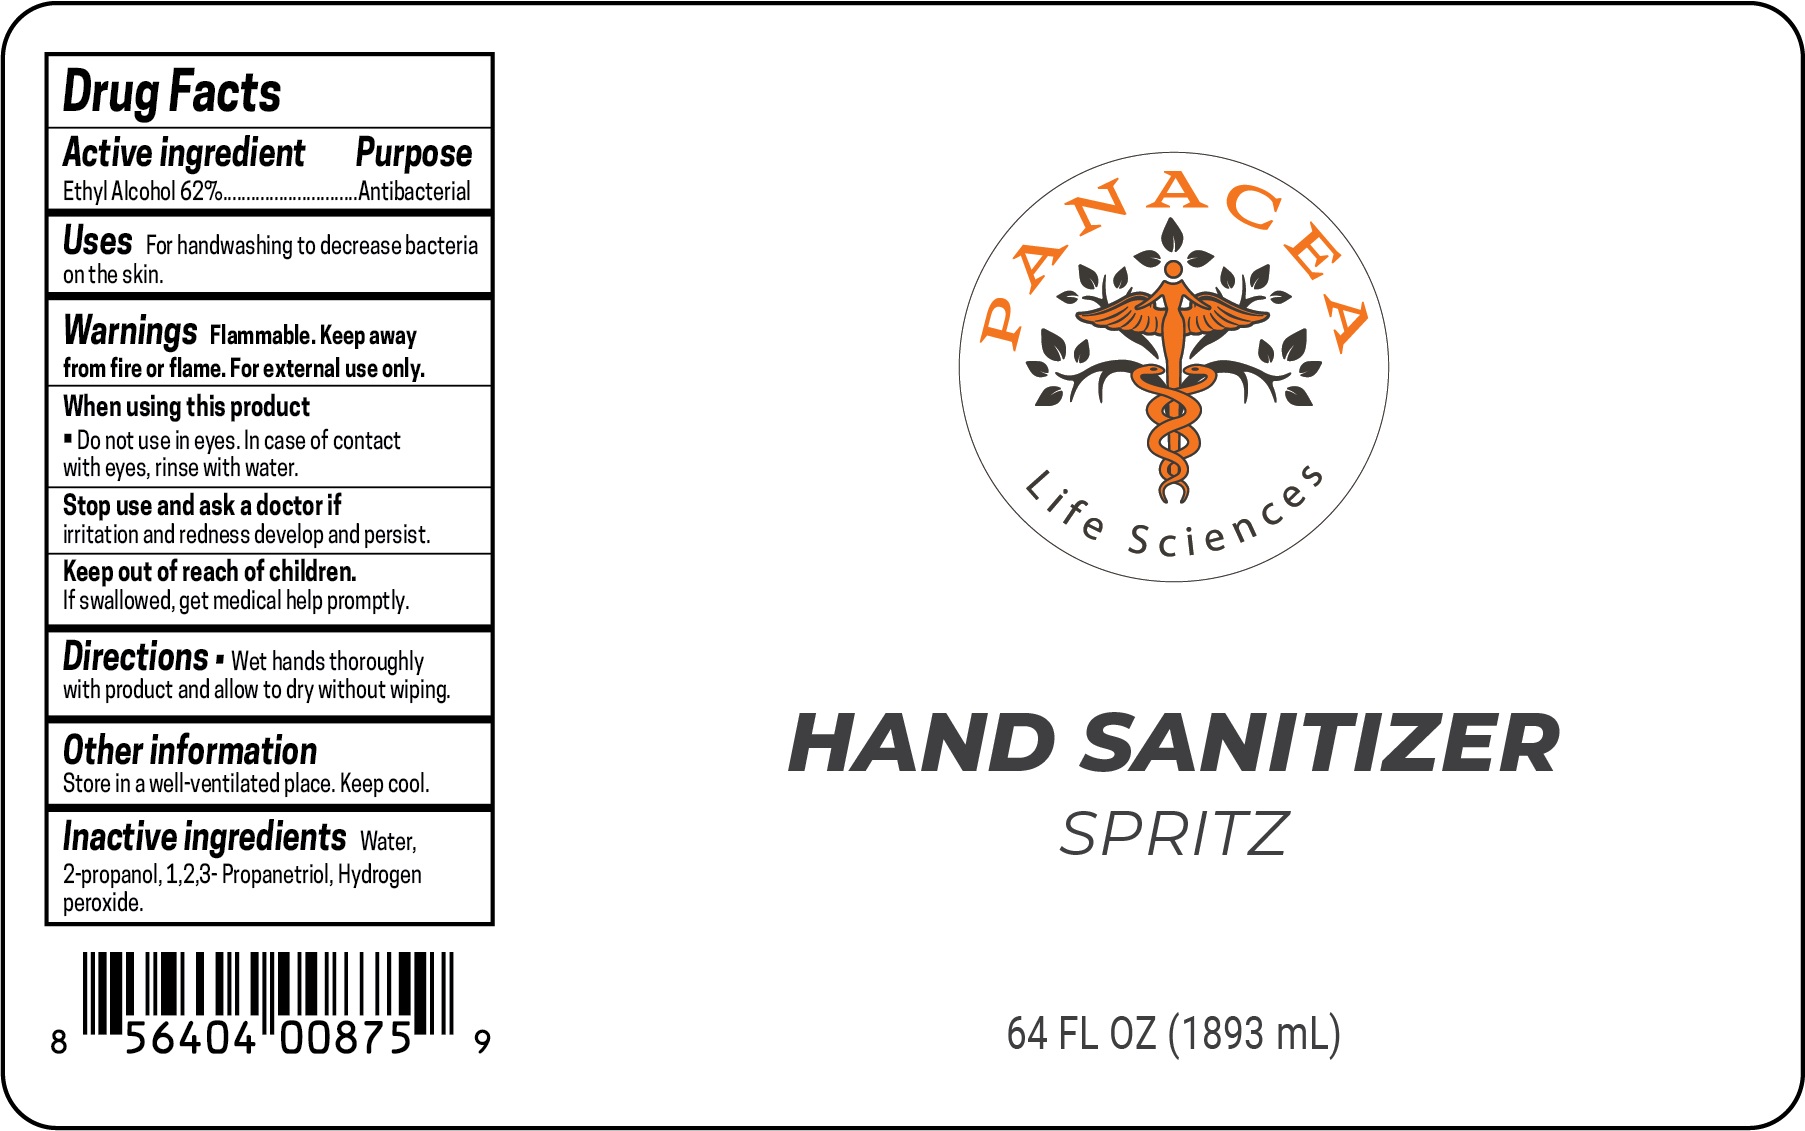 PLS Hand Sanitizer Spritz 1893 ml Label